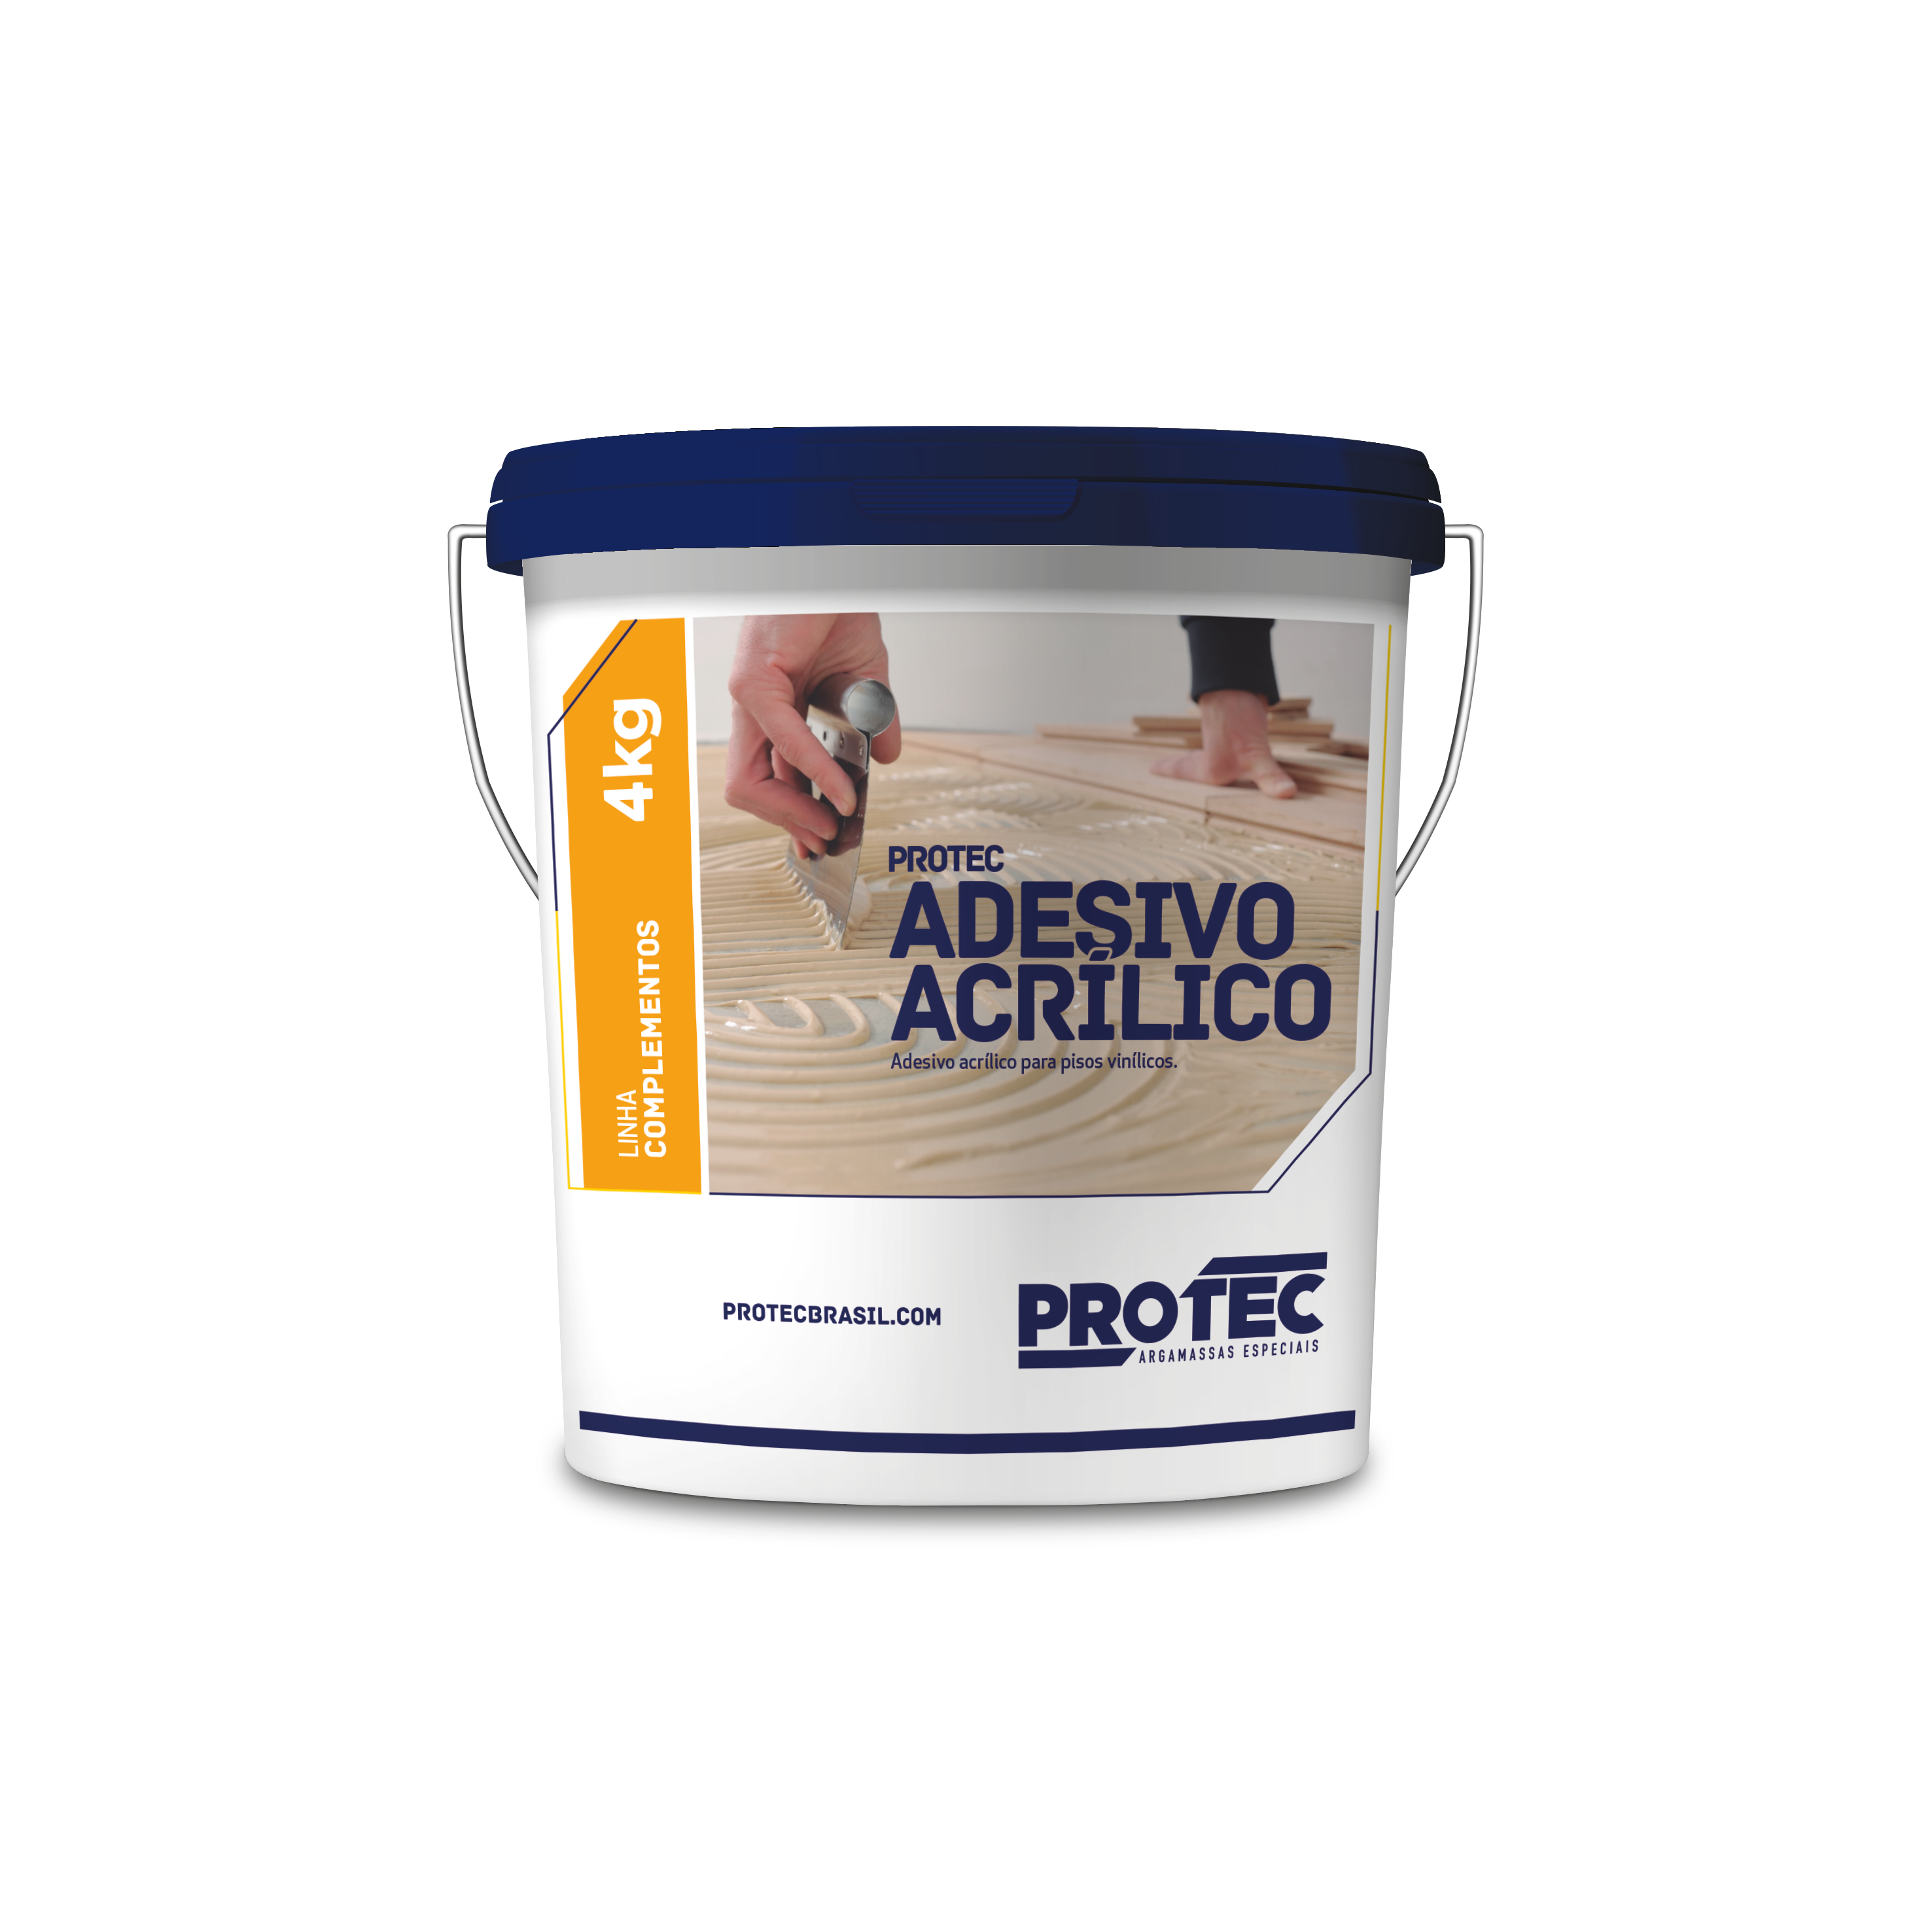 Protec Adesivo Acrílico - Balde 4 kg